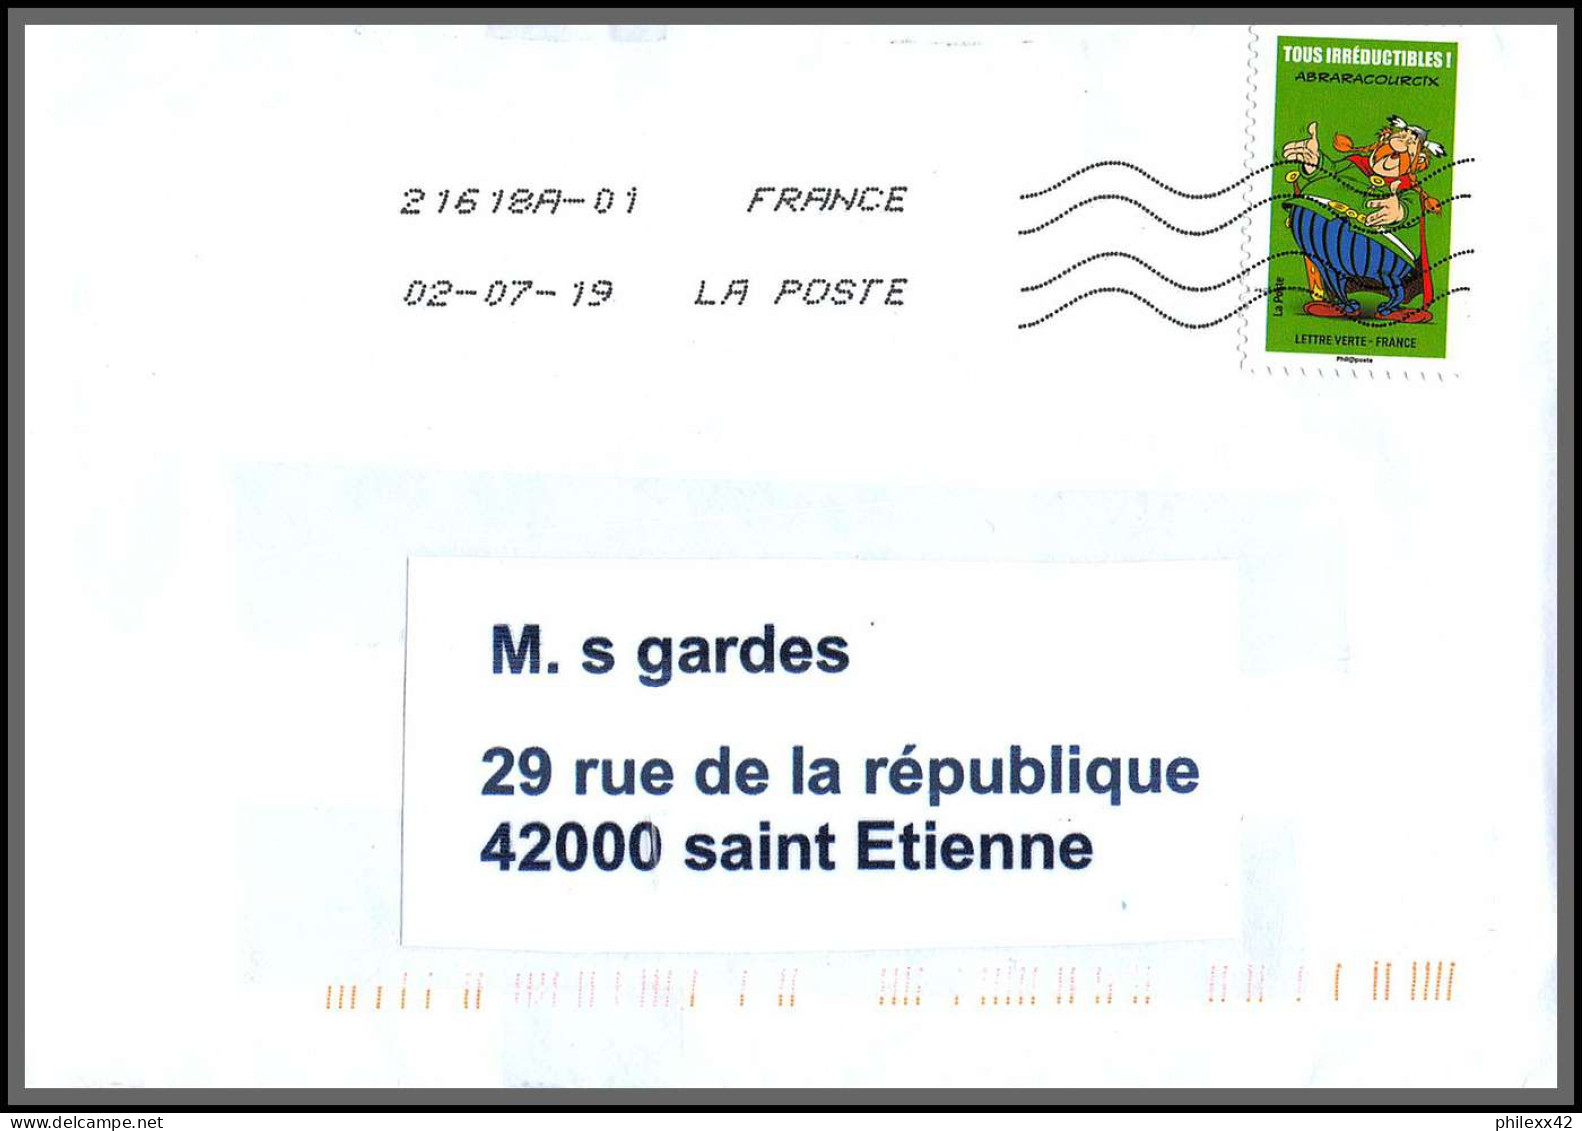 95730 - lot de 15 courriers lettres enveloppes de l'année 2019 divers affranchissements en EUROS